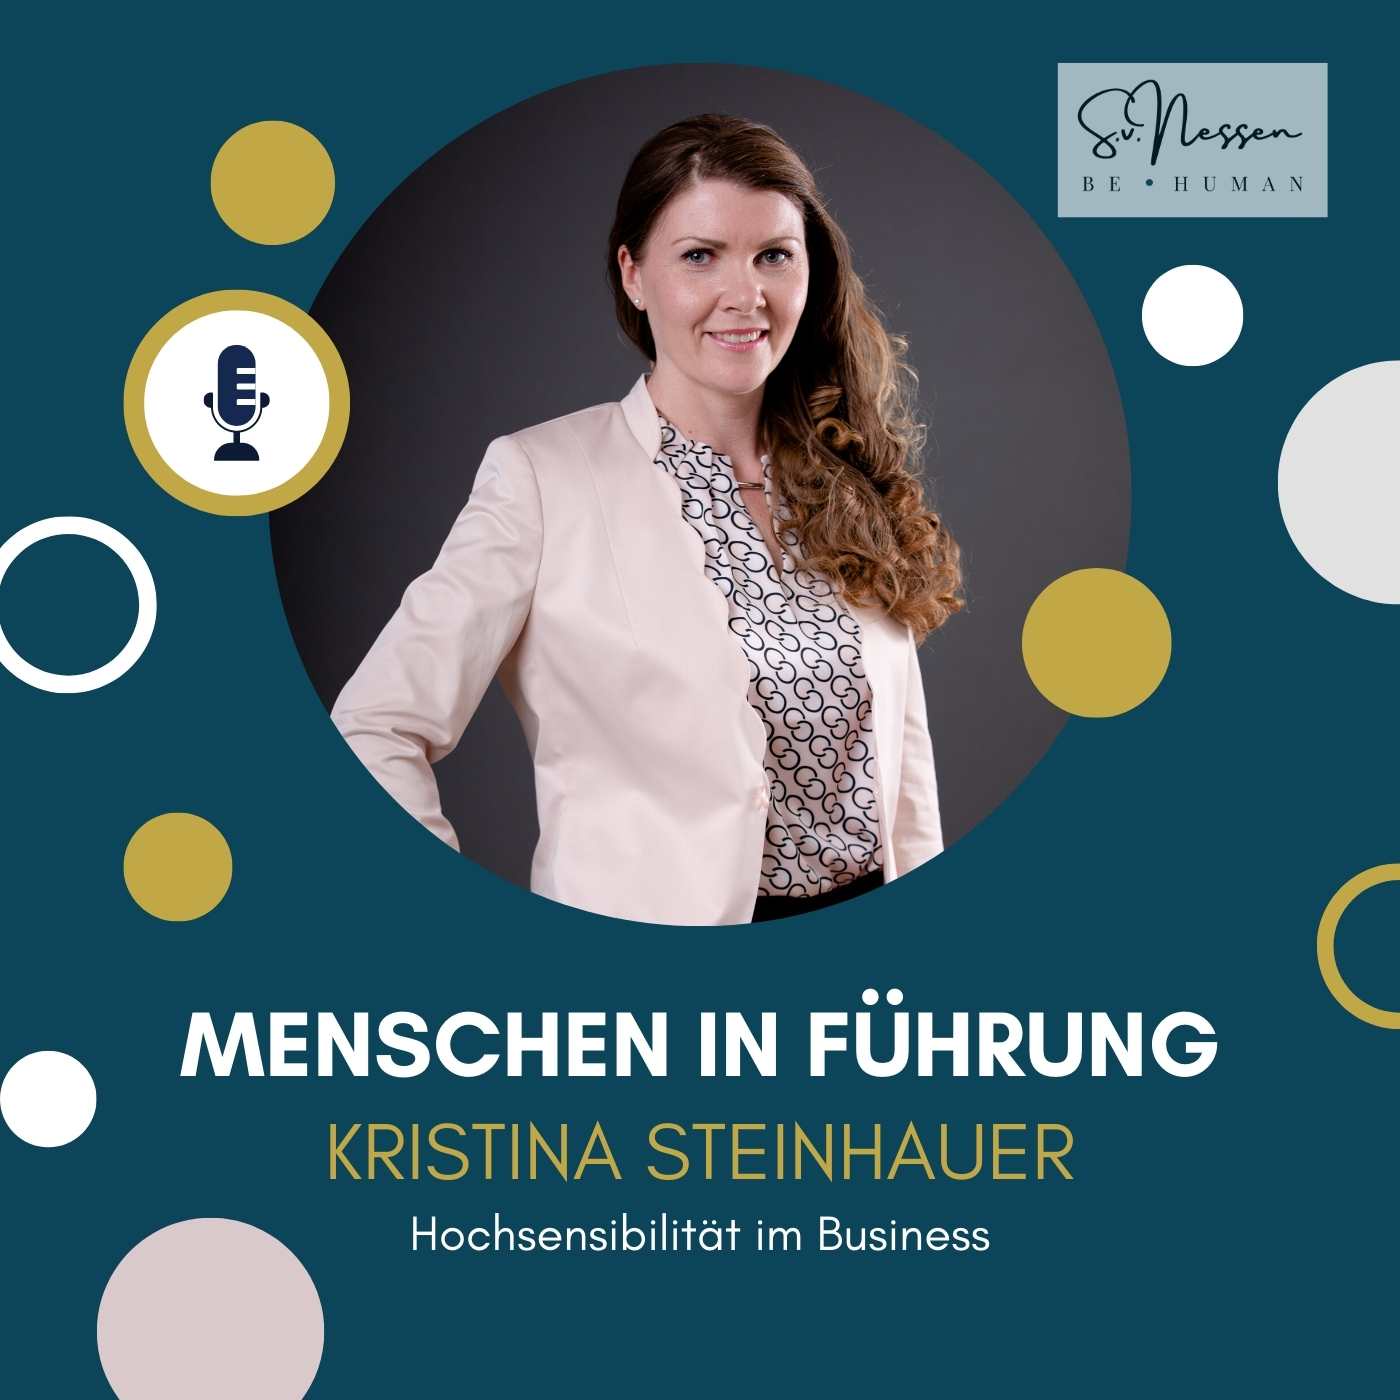 Hochsensibilität im Business mit Kristina Steinhauer